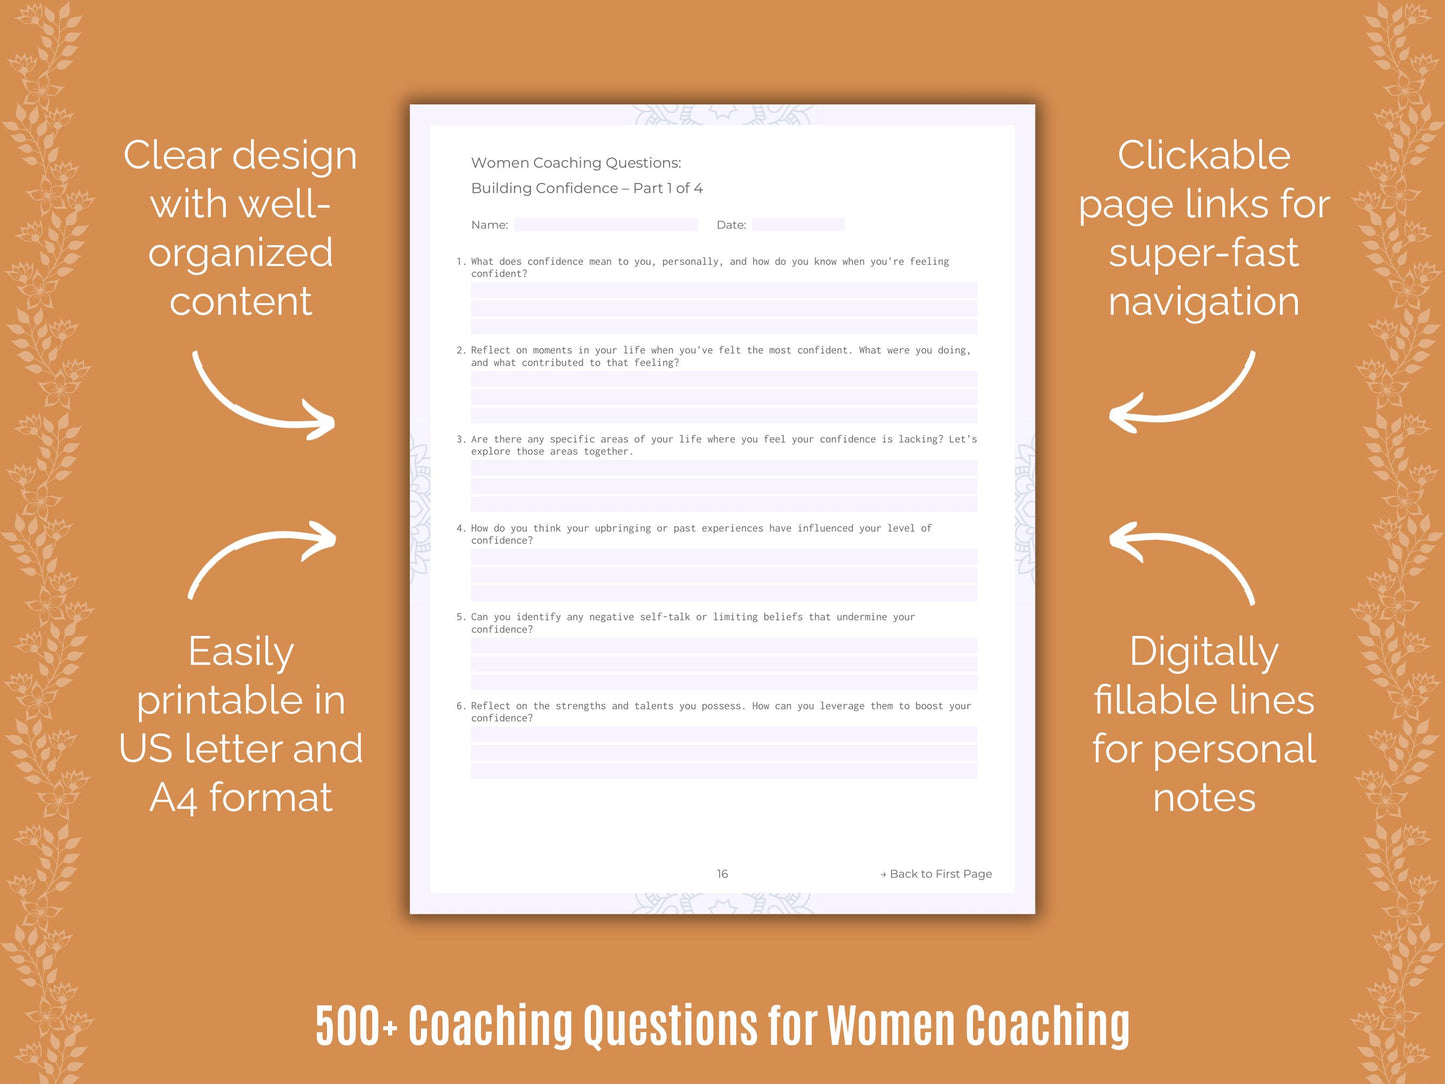 Coaching Resource